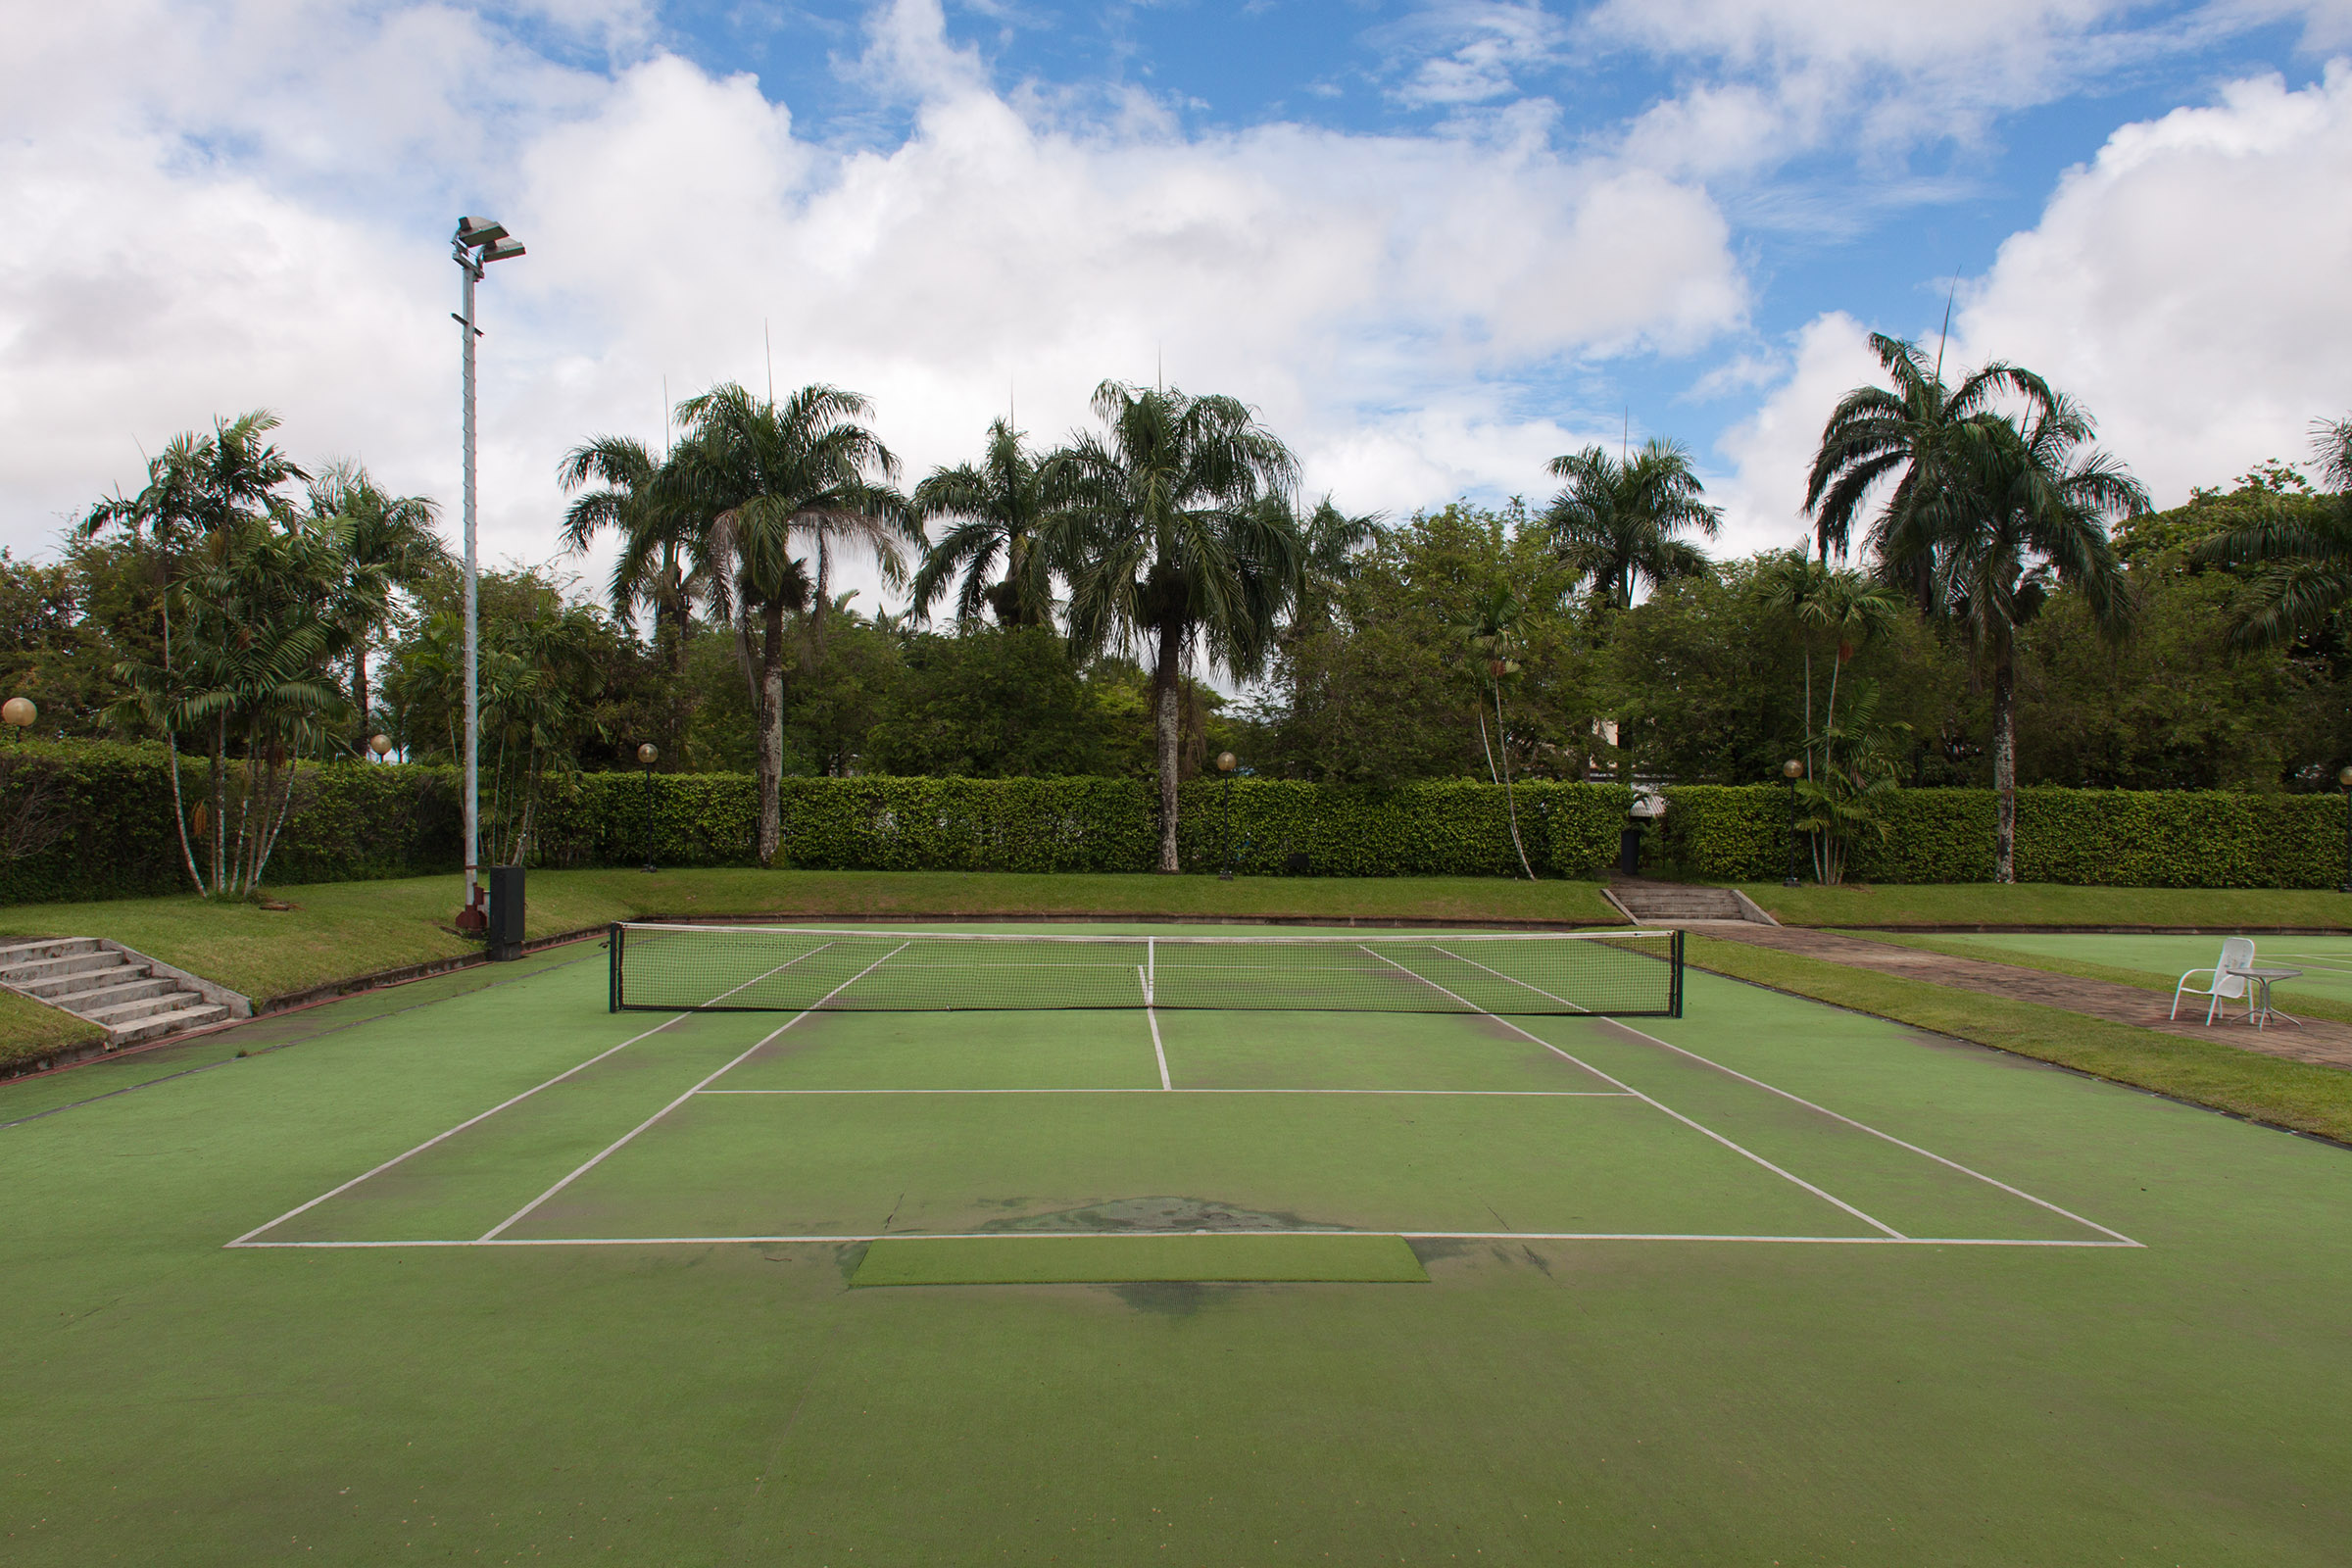 Tennis court photo